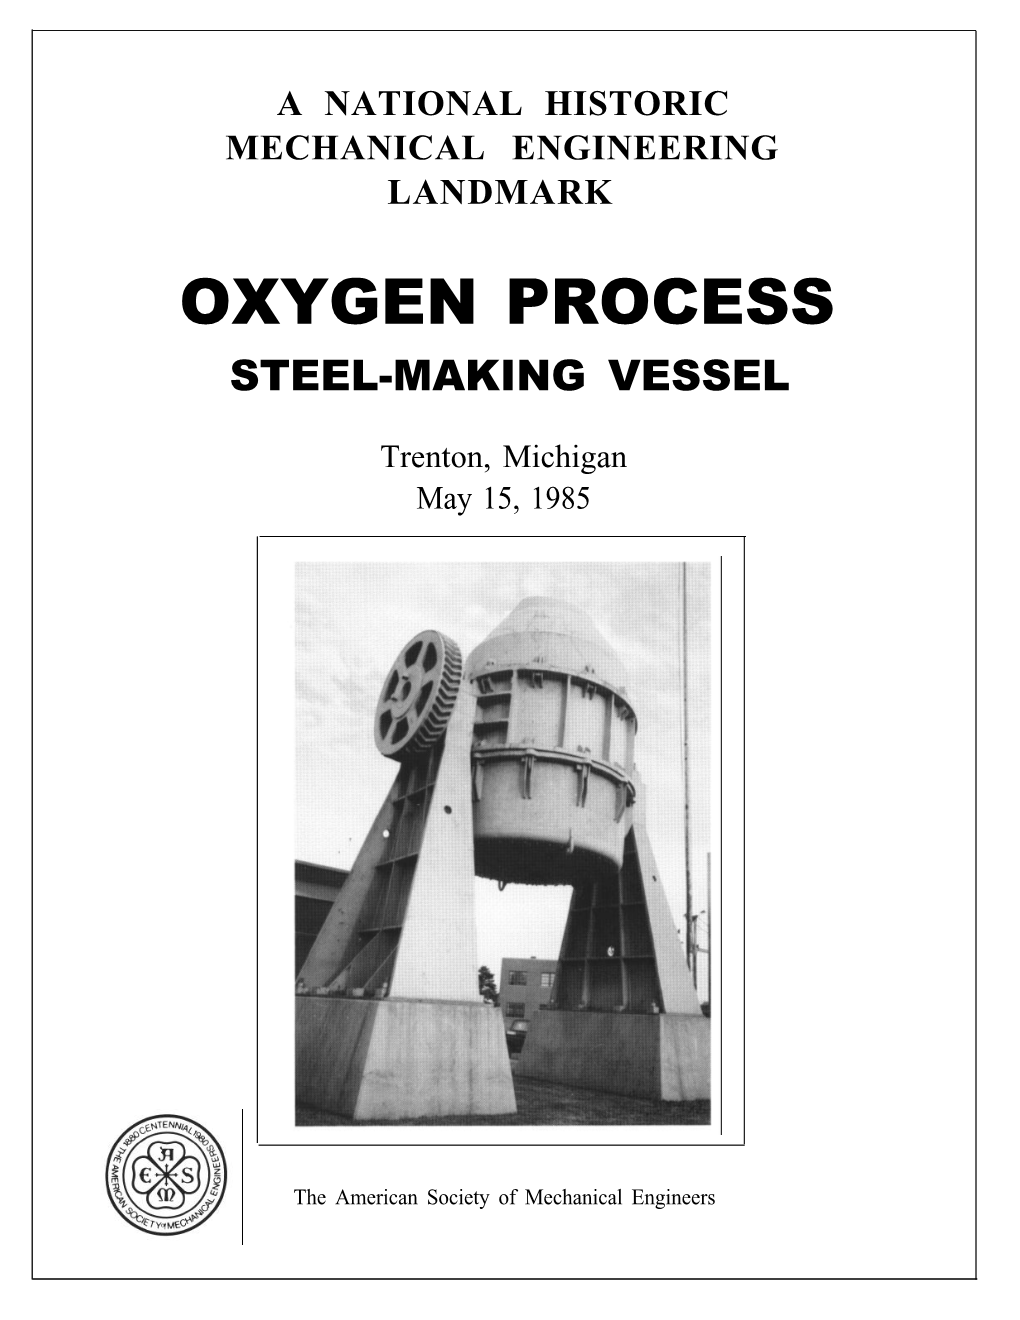 Oxygen Process Steel-Making Vessel